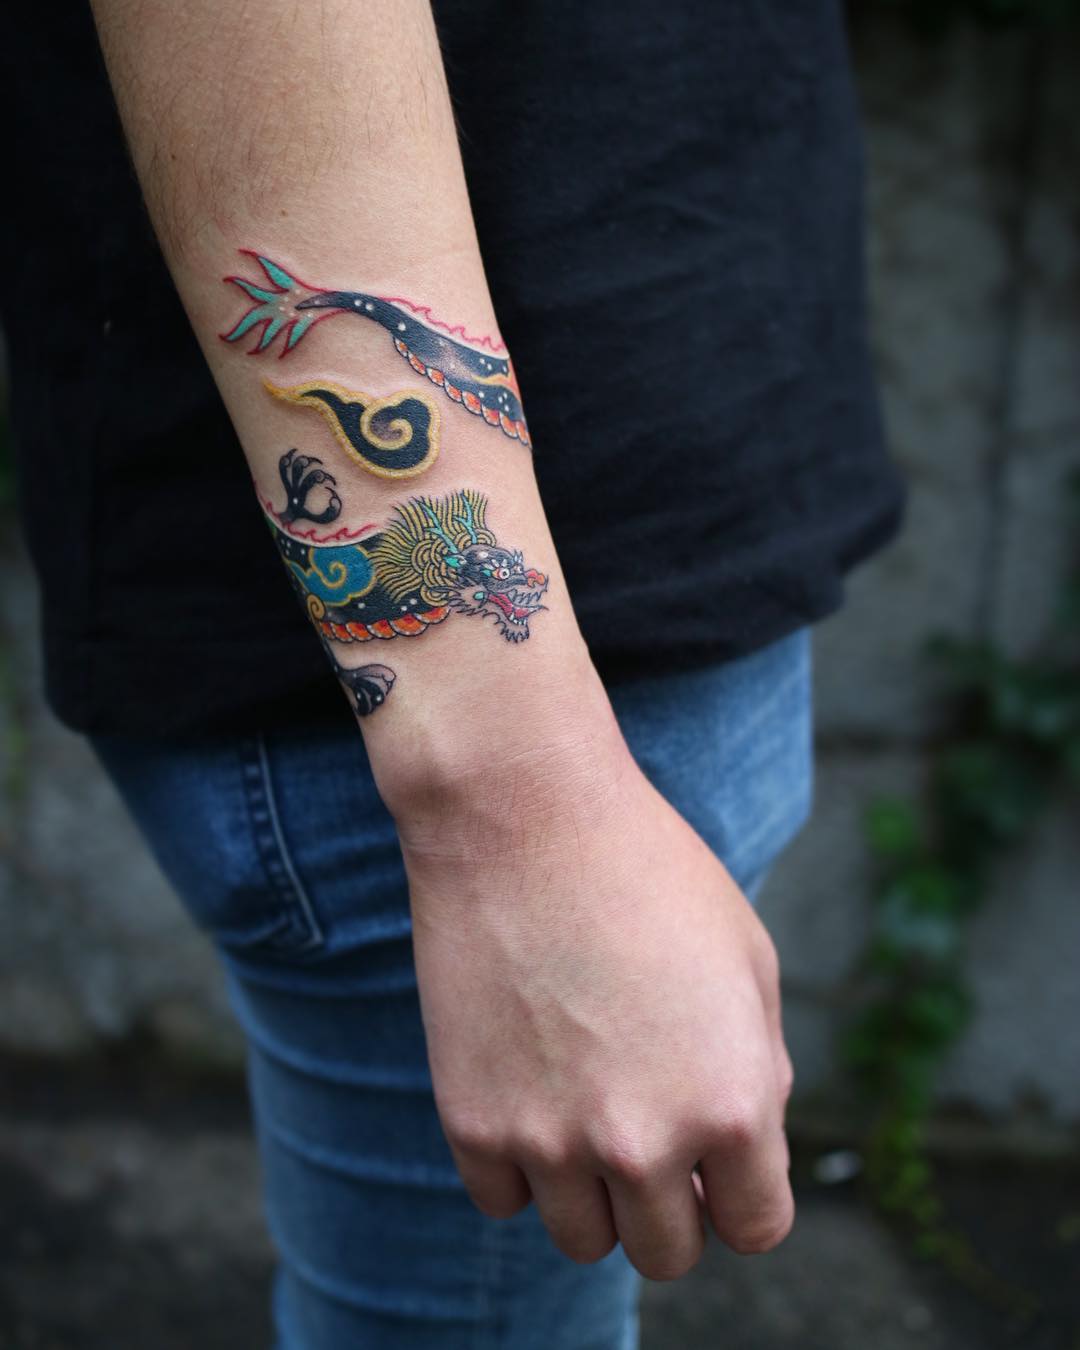 21 Stunning Dragon Ear Tattoos  Tattoo Designs  TattoosBagcom